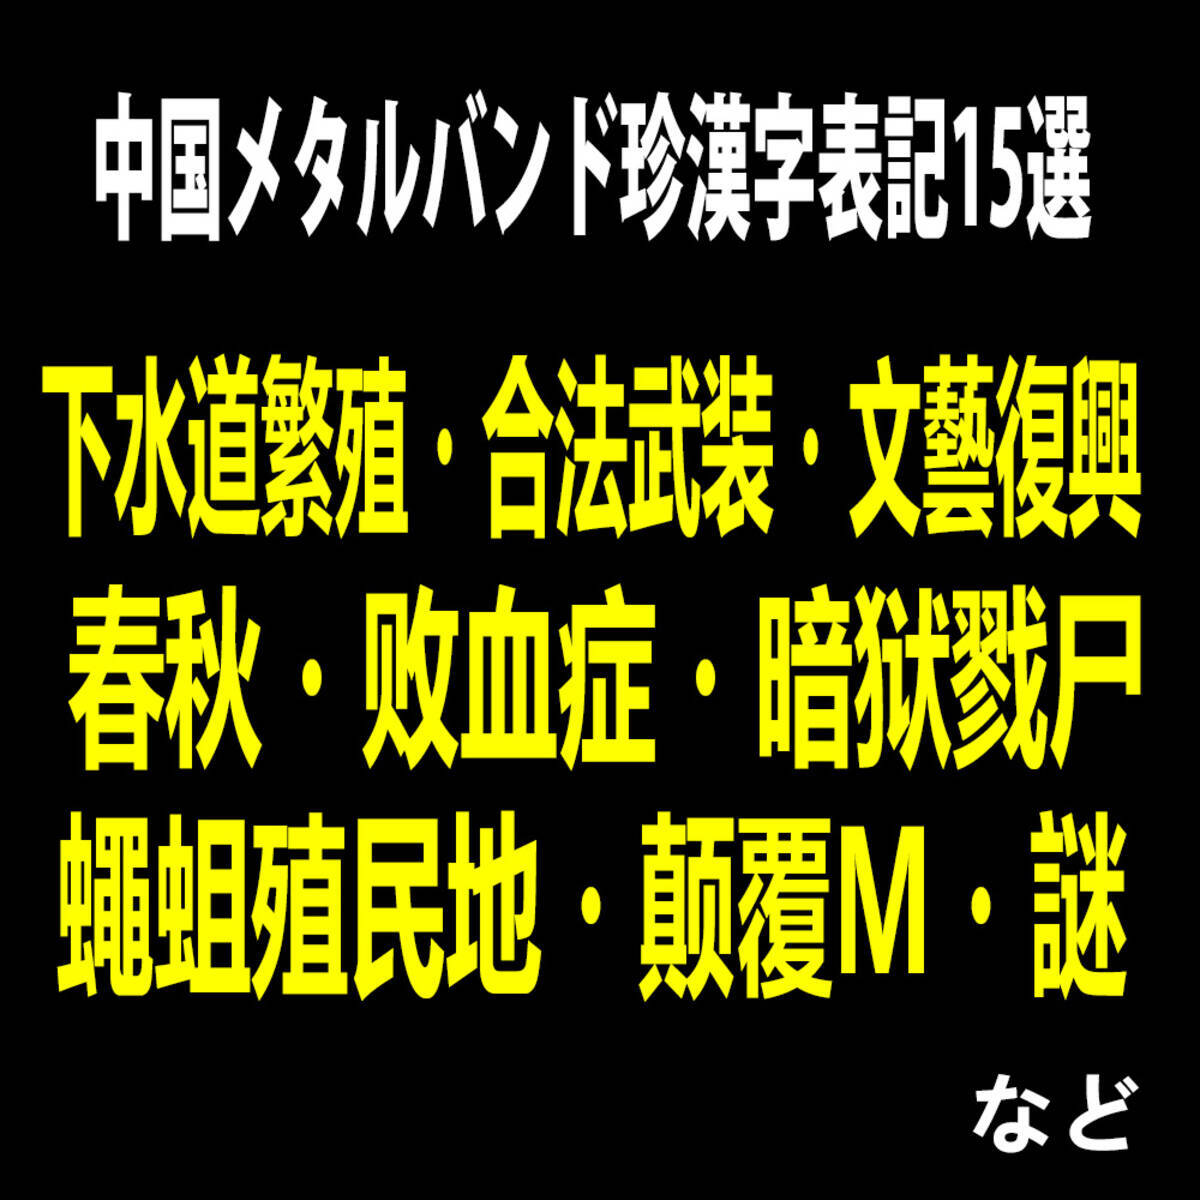 辺境音楽マニア 中国メタルバンド珍漢字表記15選 16年11月6日 エキサイトニュース